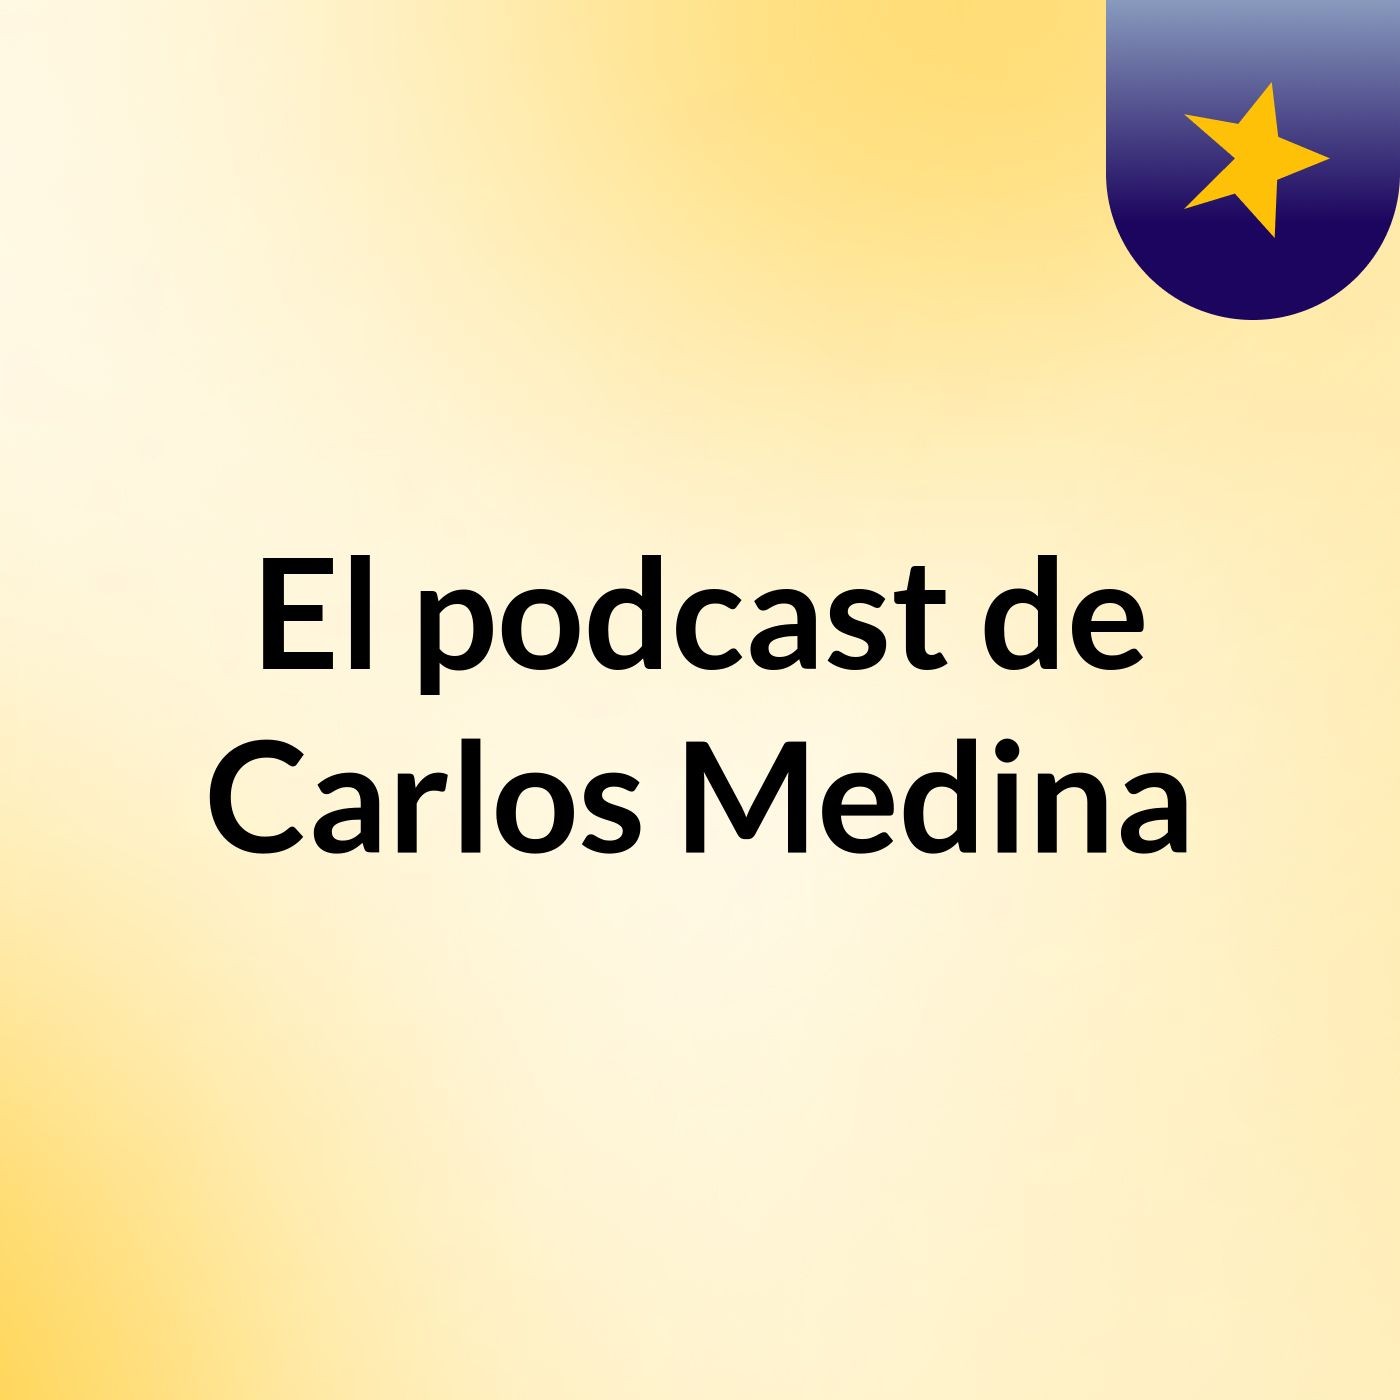 El podcast de Carlos Medina